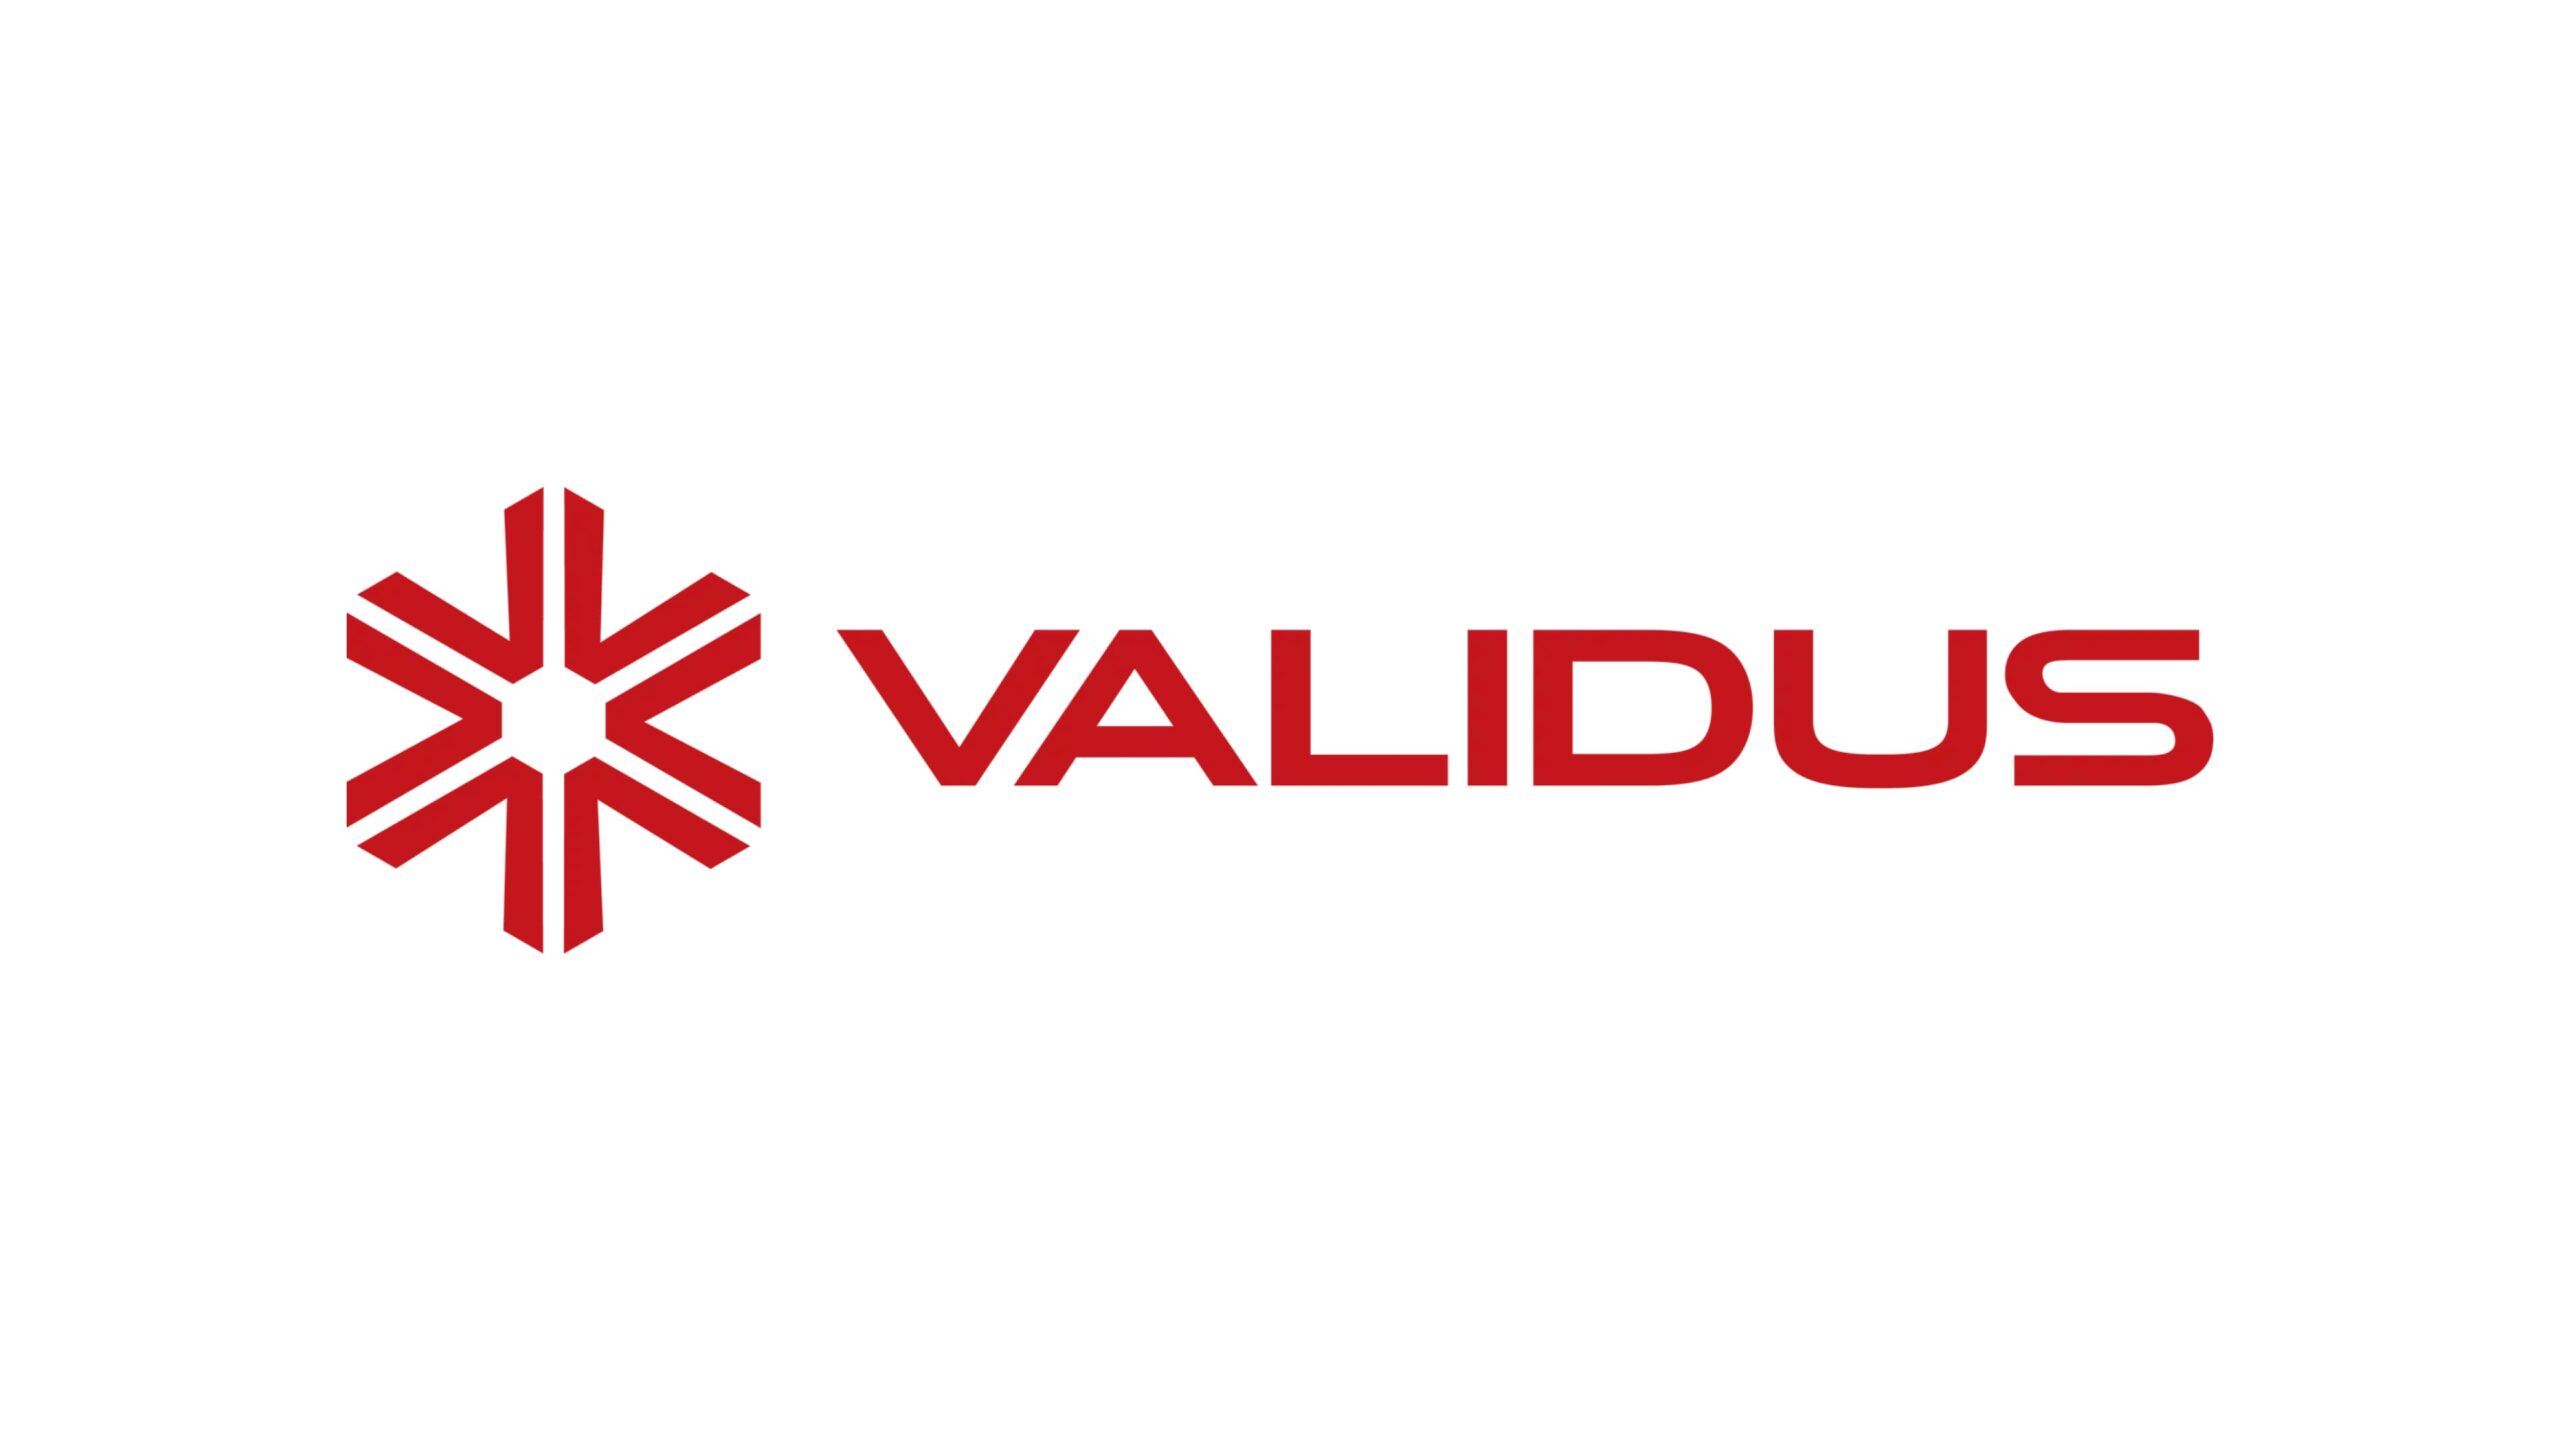 ベトナムでSME向けファイナンス・プラットフォームを提供するValidus Vietnamがレアゾン・ホールディングスより資金調達を実施